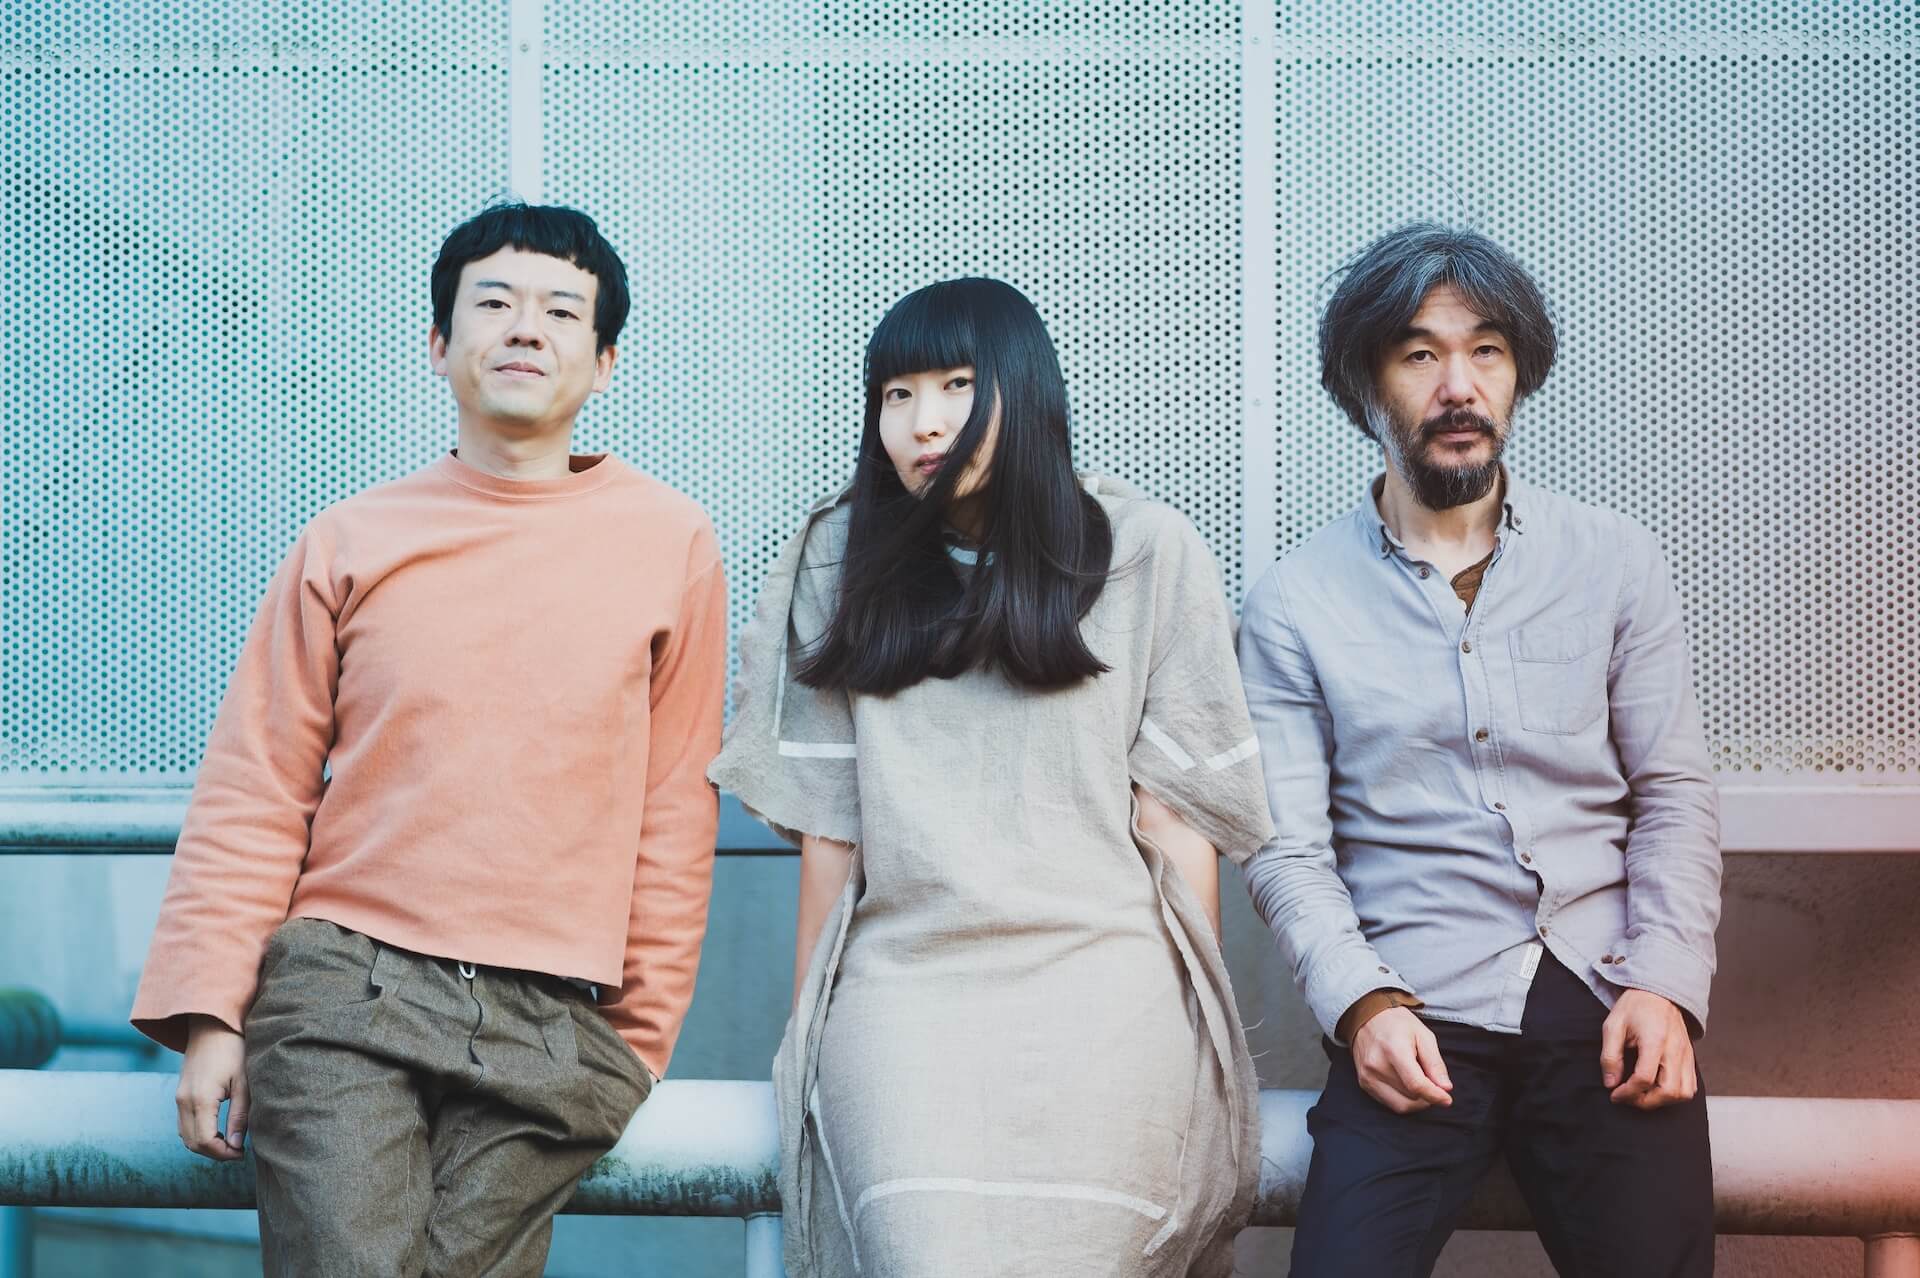 寺尾紗穂、伊賀航、あだち麗三郎によるバンド・冬にわかれてが2ndアルバム『タンデム』を4月にリリース music210129-fuyuniwakarete-2